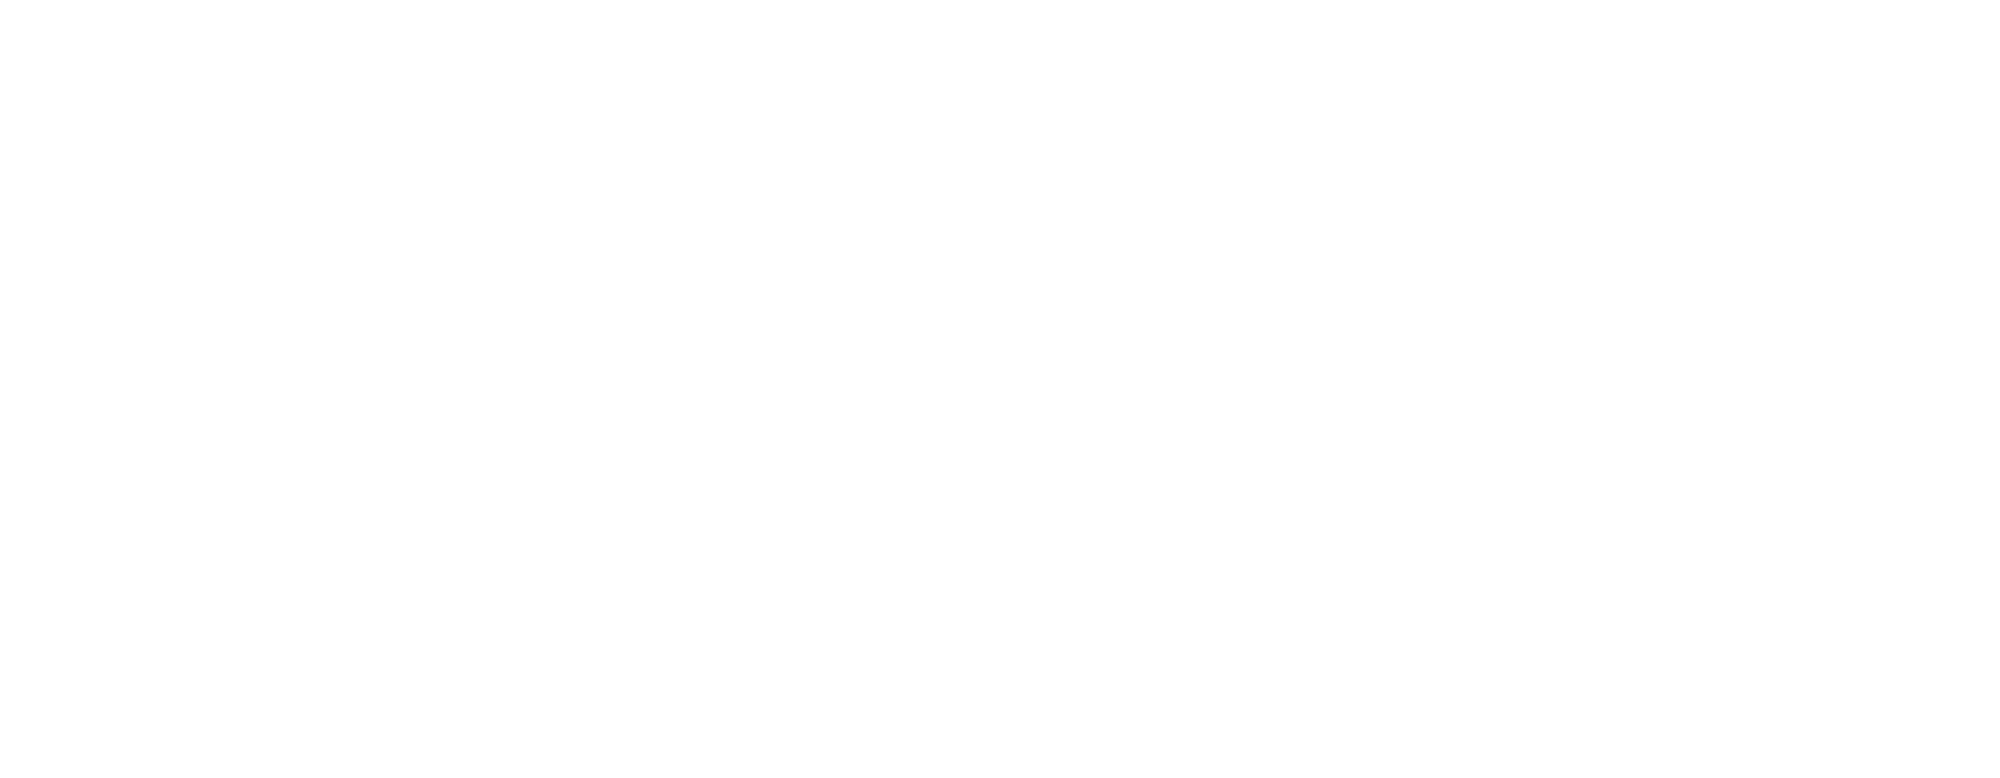 マリリニュージーランドのマヌカゴールド